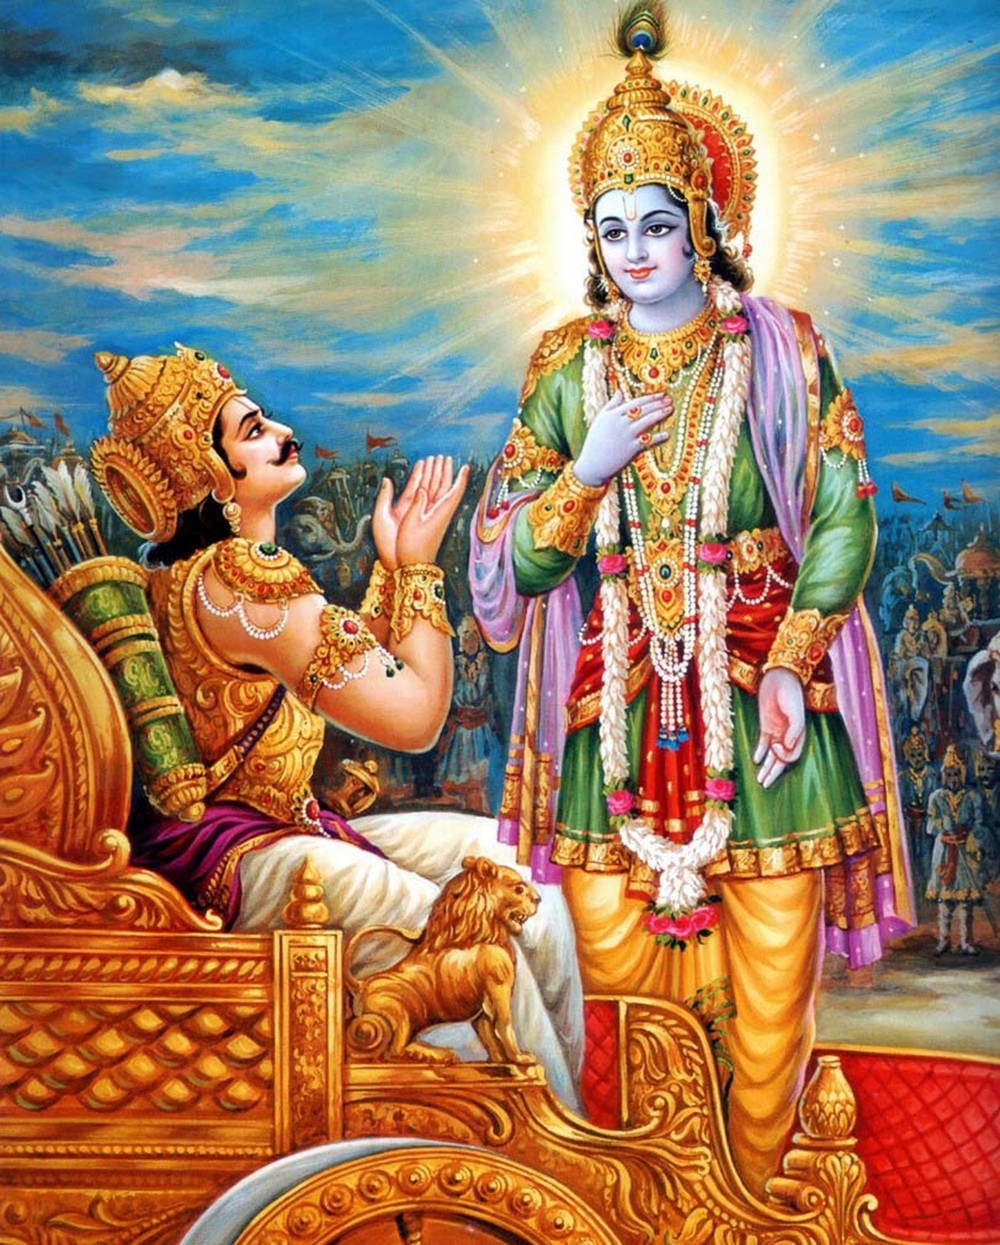 Krishnaarjuna Indischer Gott Der Mitgefühl. Wallpaper